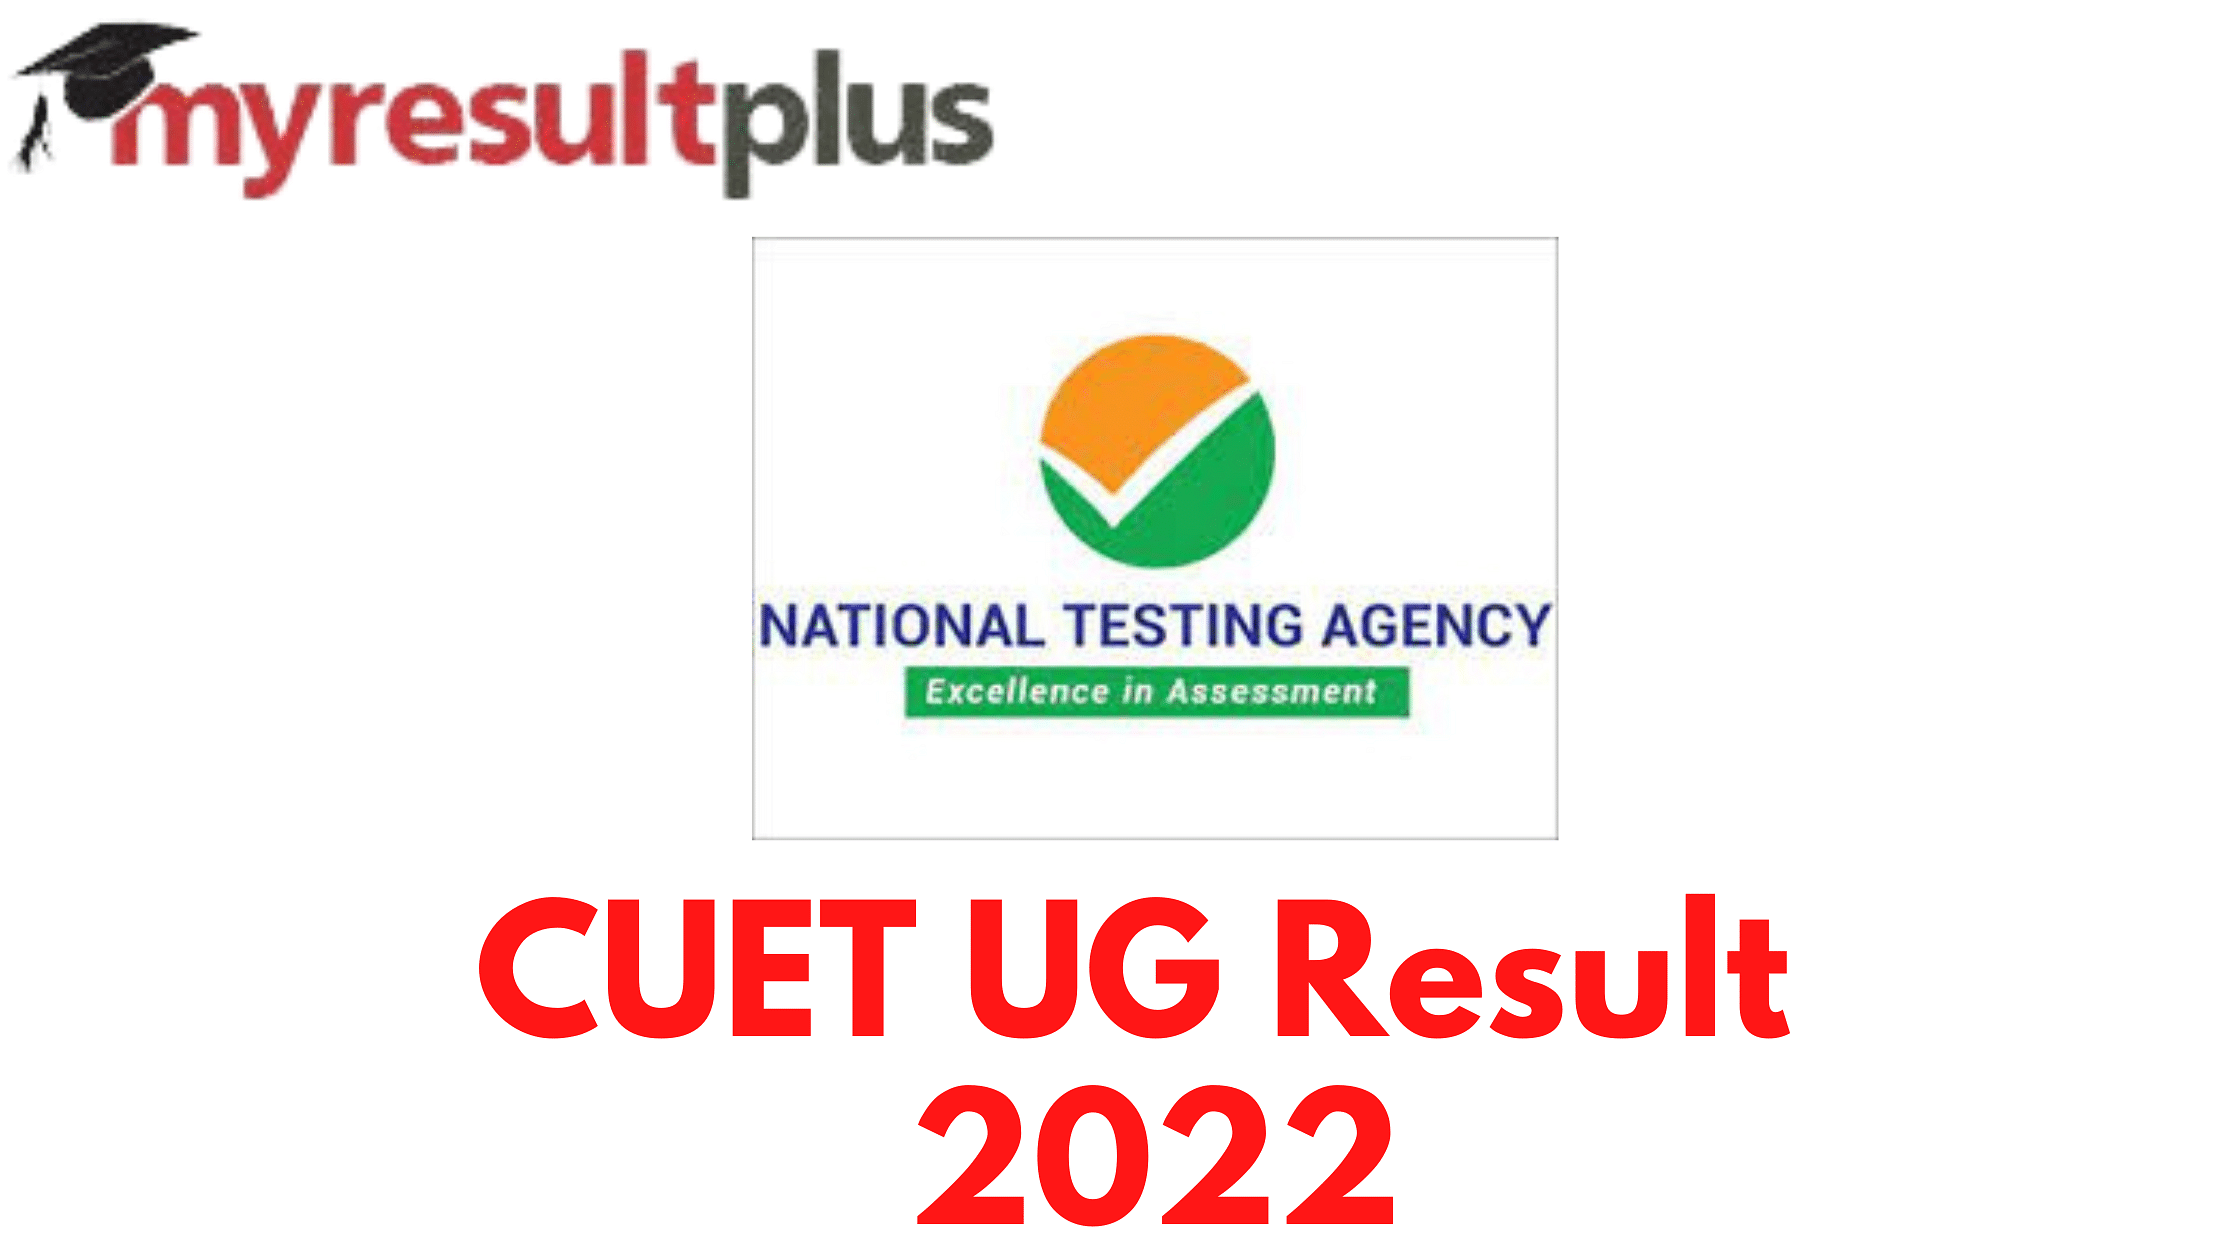 CUET UG Result 2022 Declared, Procedure to Download Scorecards Here